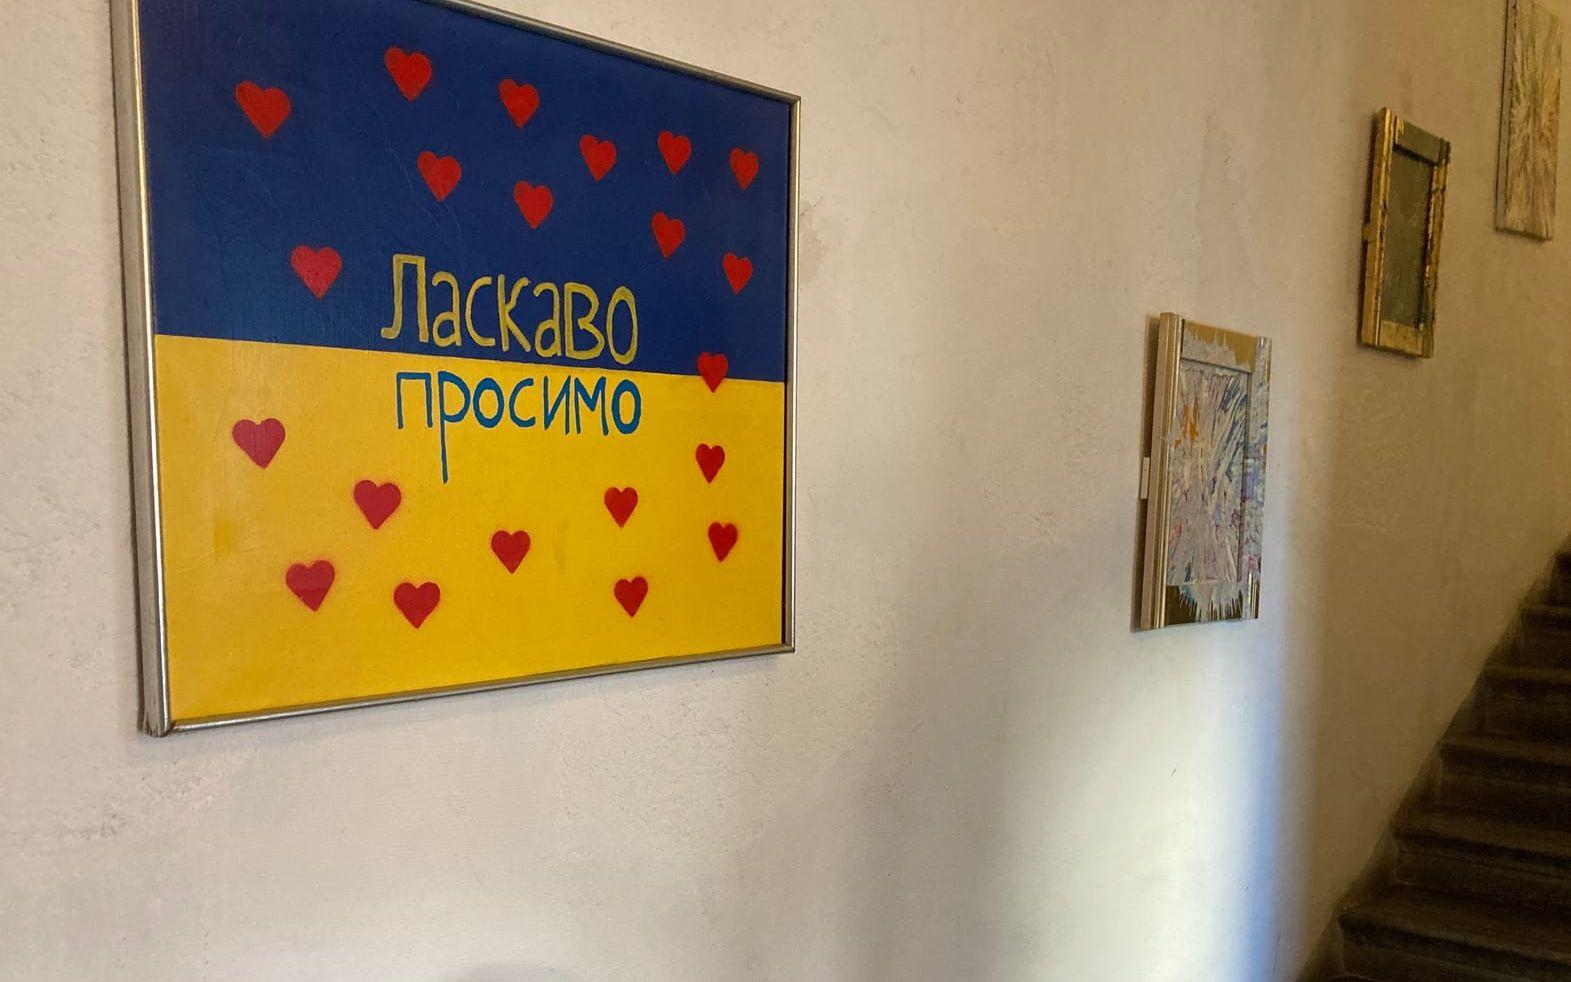 Andreas Nikunen har målat otaliga tavlor som hänger i huset. Den här är ny och ska få de ukrainare som tvingats fly sitt hemland att känna sig välkomna hit.